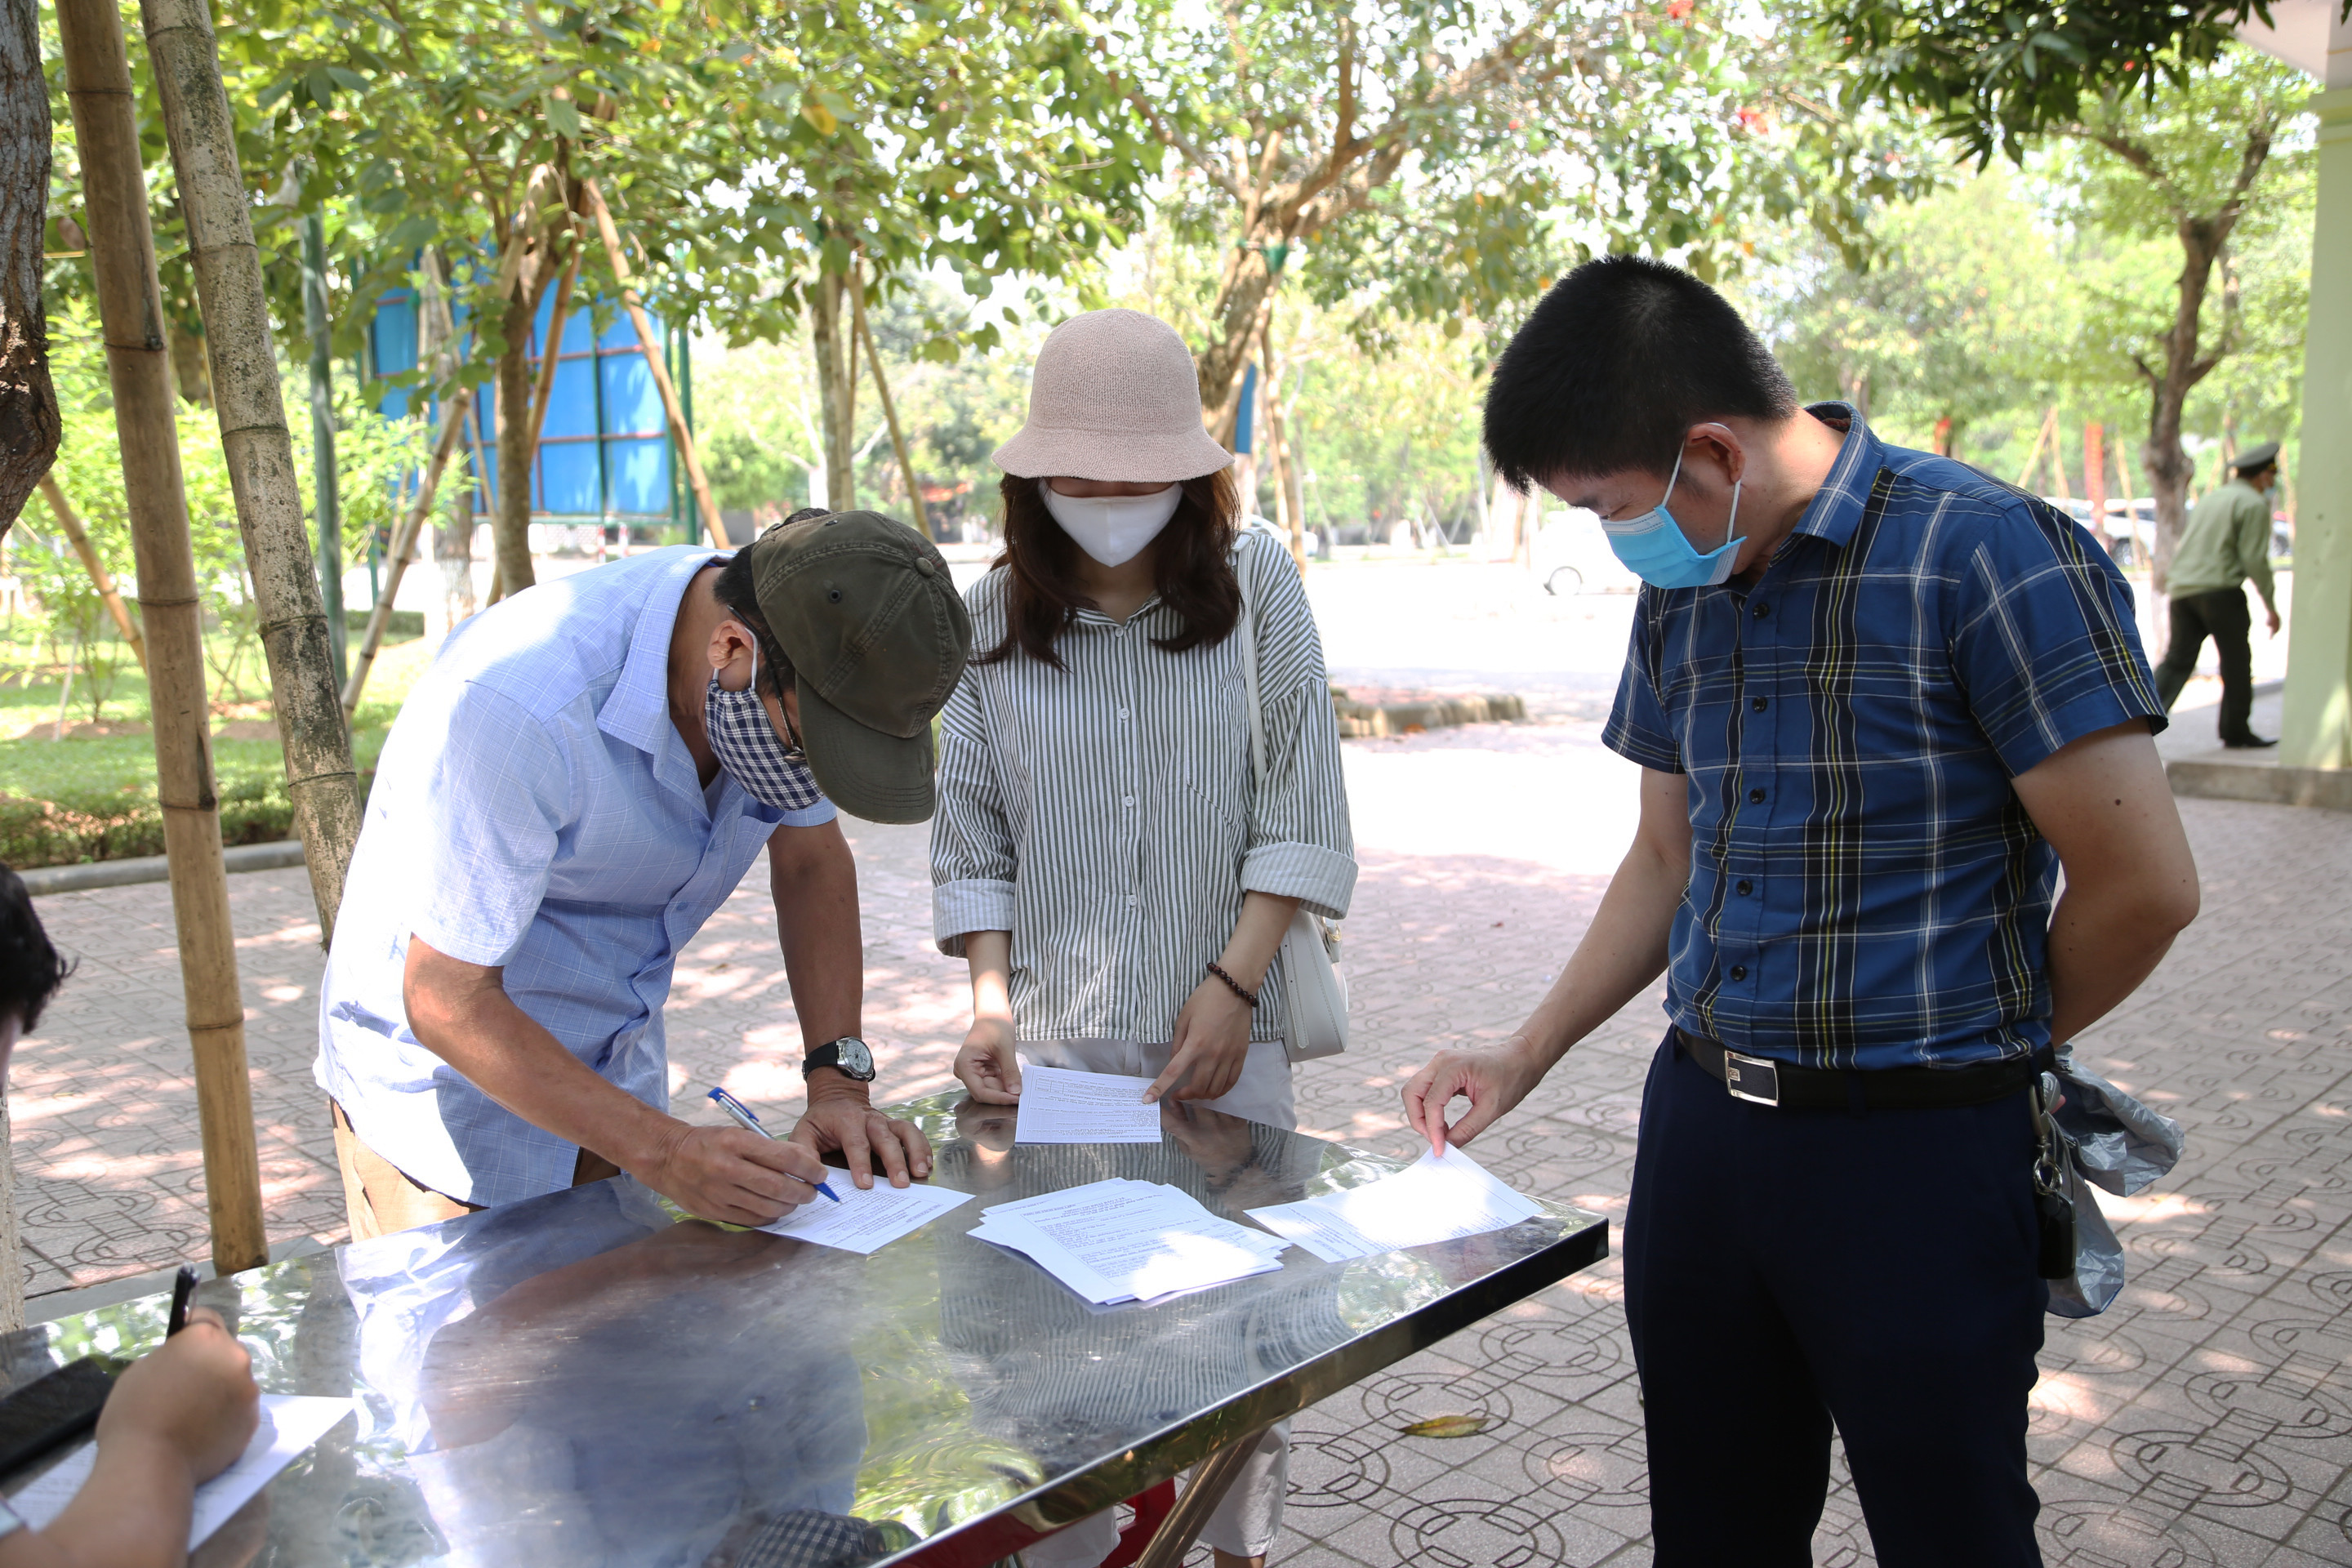 Trước khi vào tưởng niệm Bác Hồ tại Khu Di tích Quốc gia đặc biệt Kim Liên, tất cả người dân đều được hướng dẫn khai báo y tế. Ảnh: Quốc Sơn